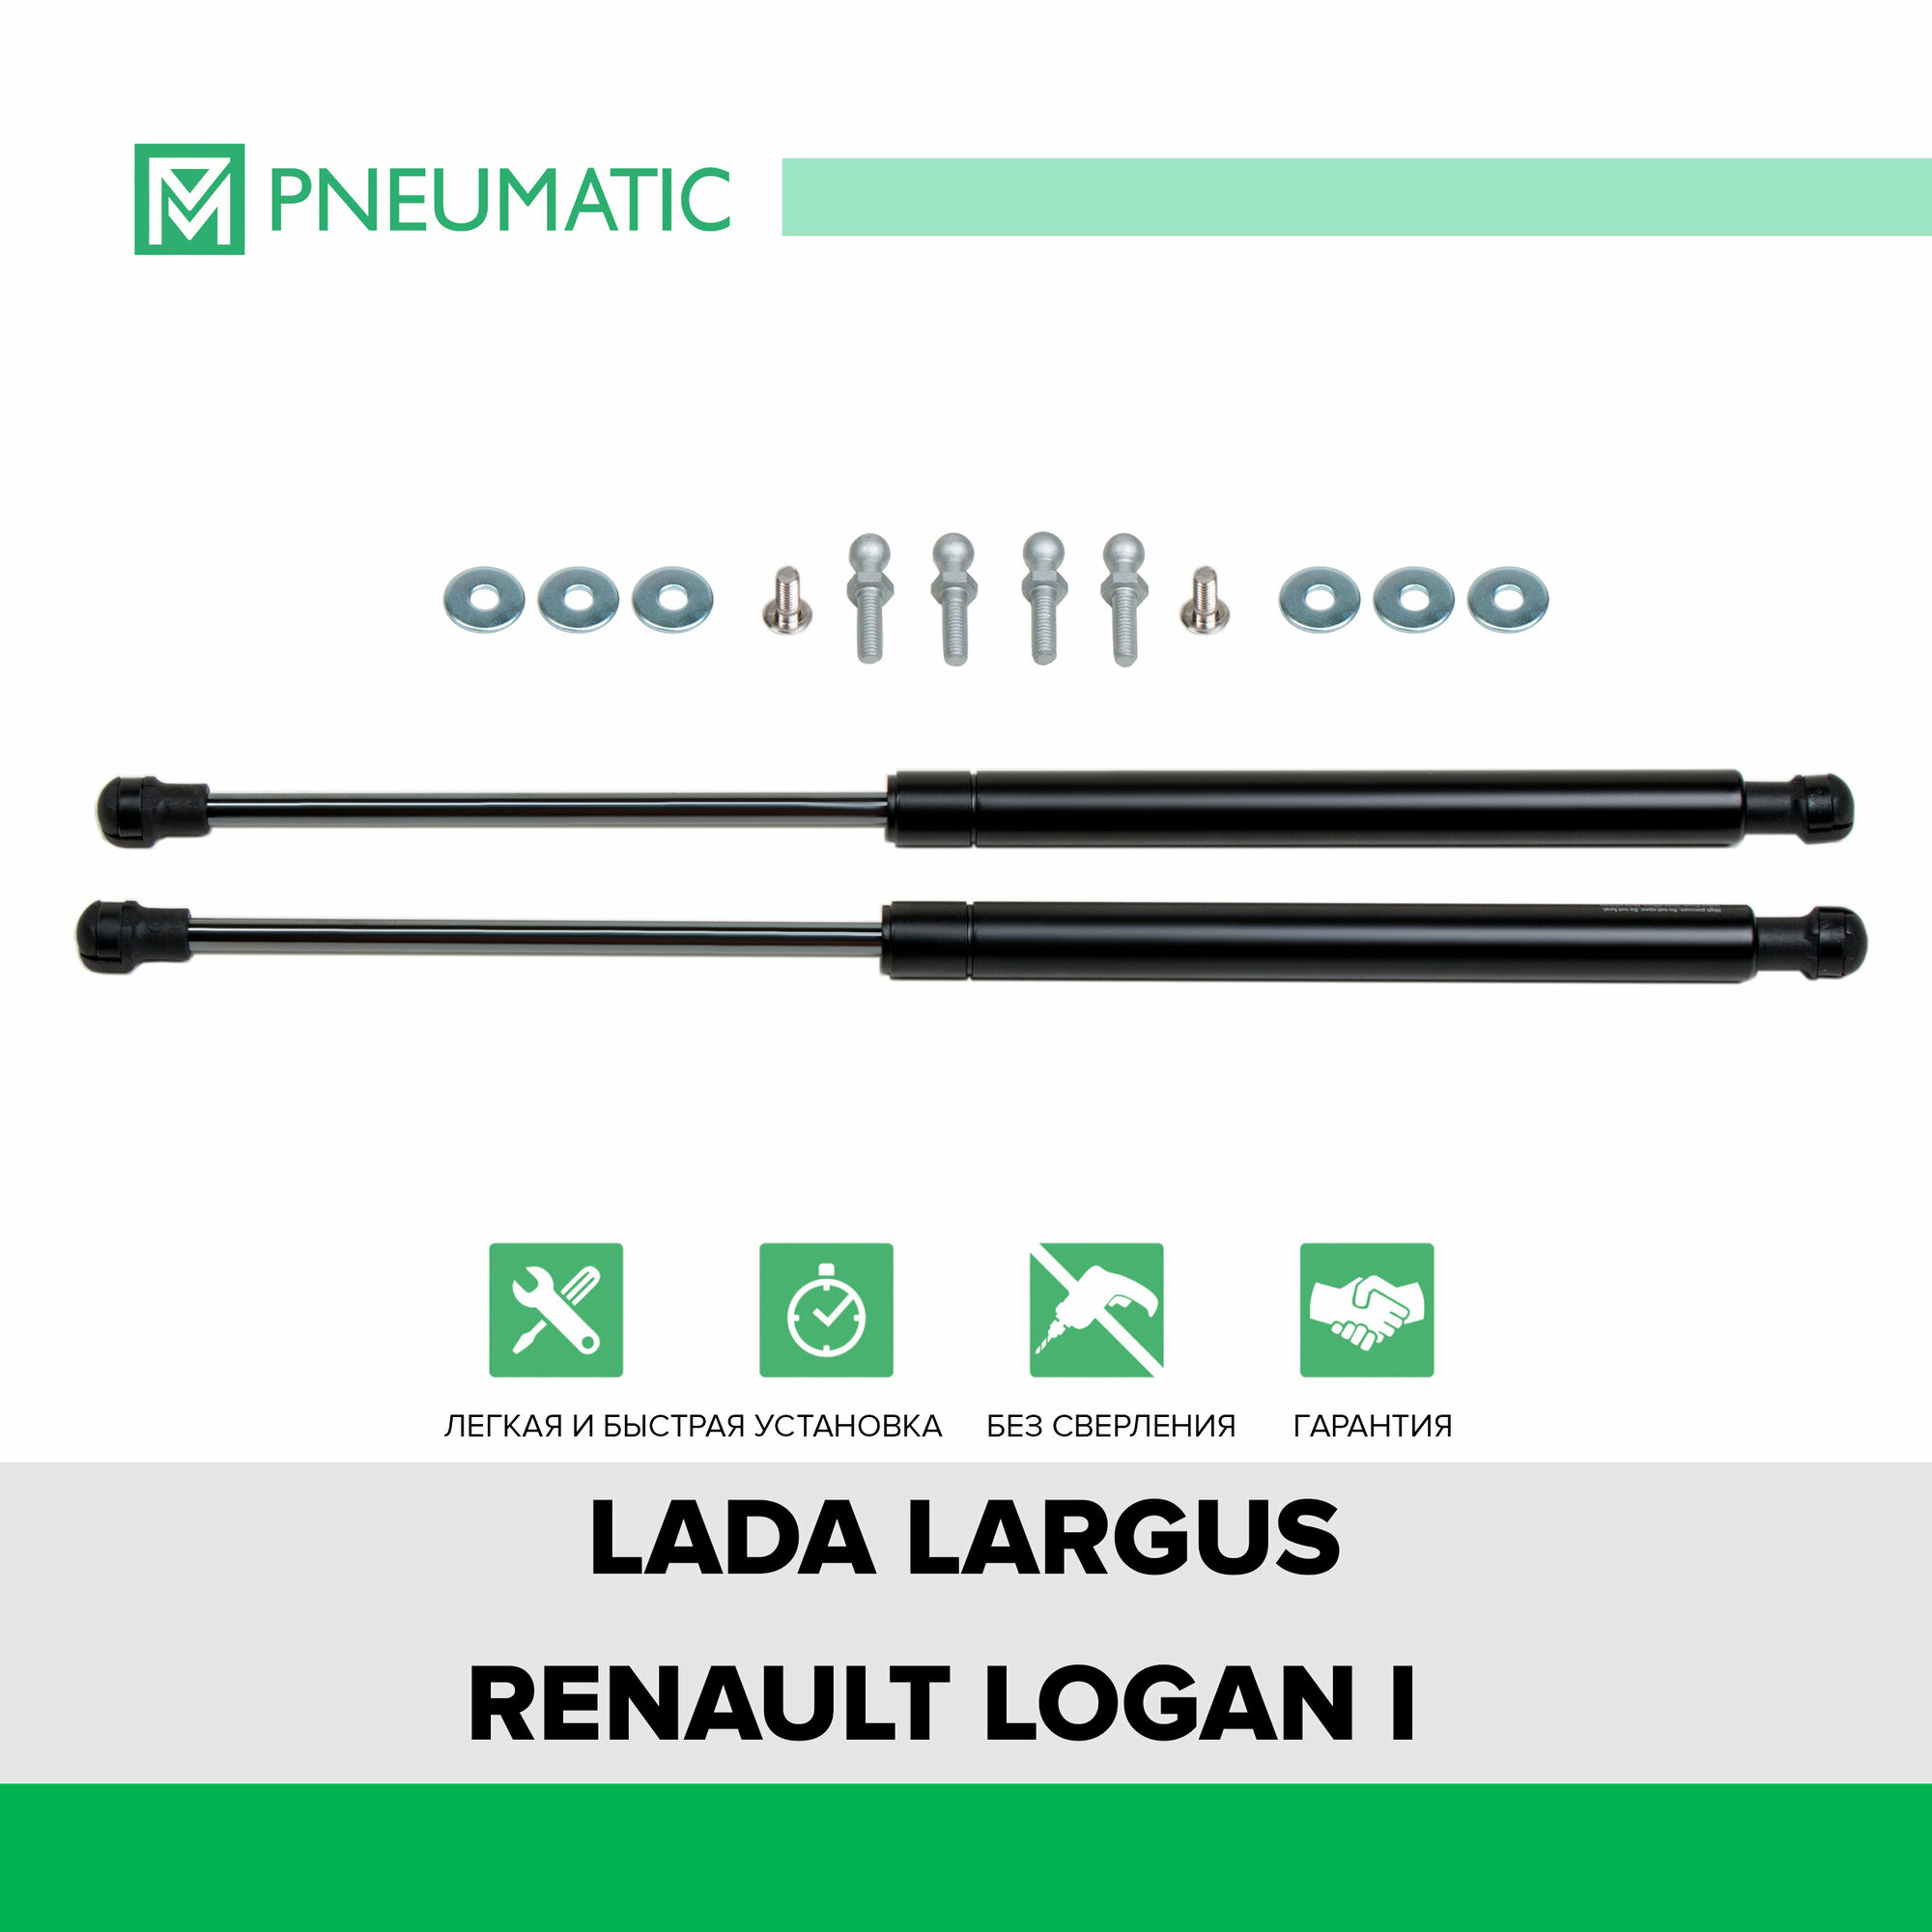 Газовые упоры капота Pneumatic для Lada Largus 2012-2020/Renault Logan I поколение 2004-2015, 2 шт, KU-RE-LO00-02